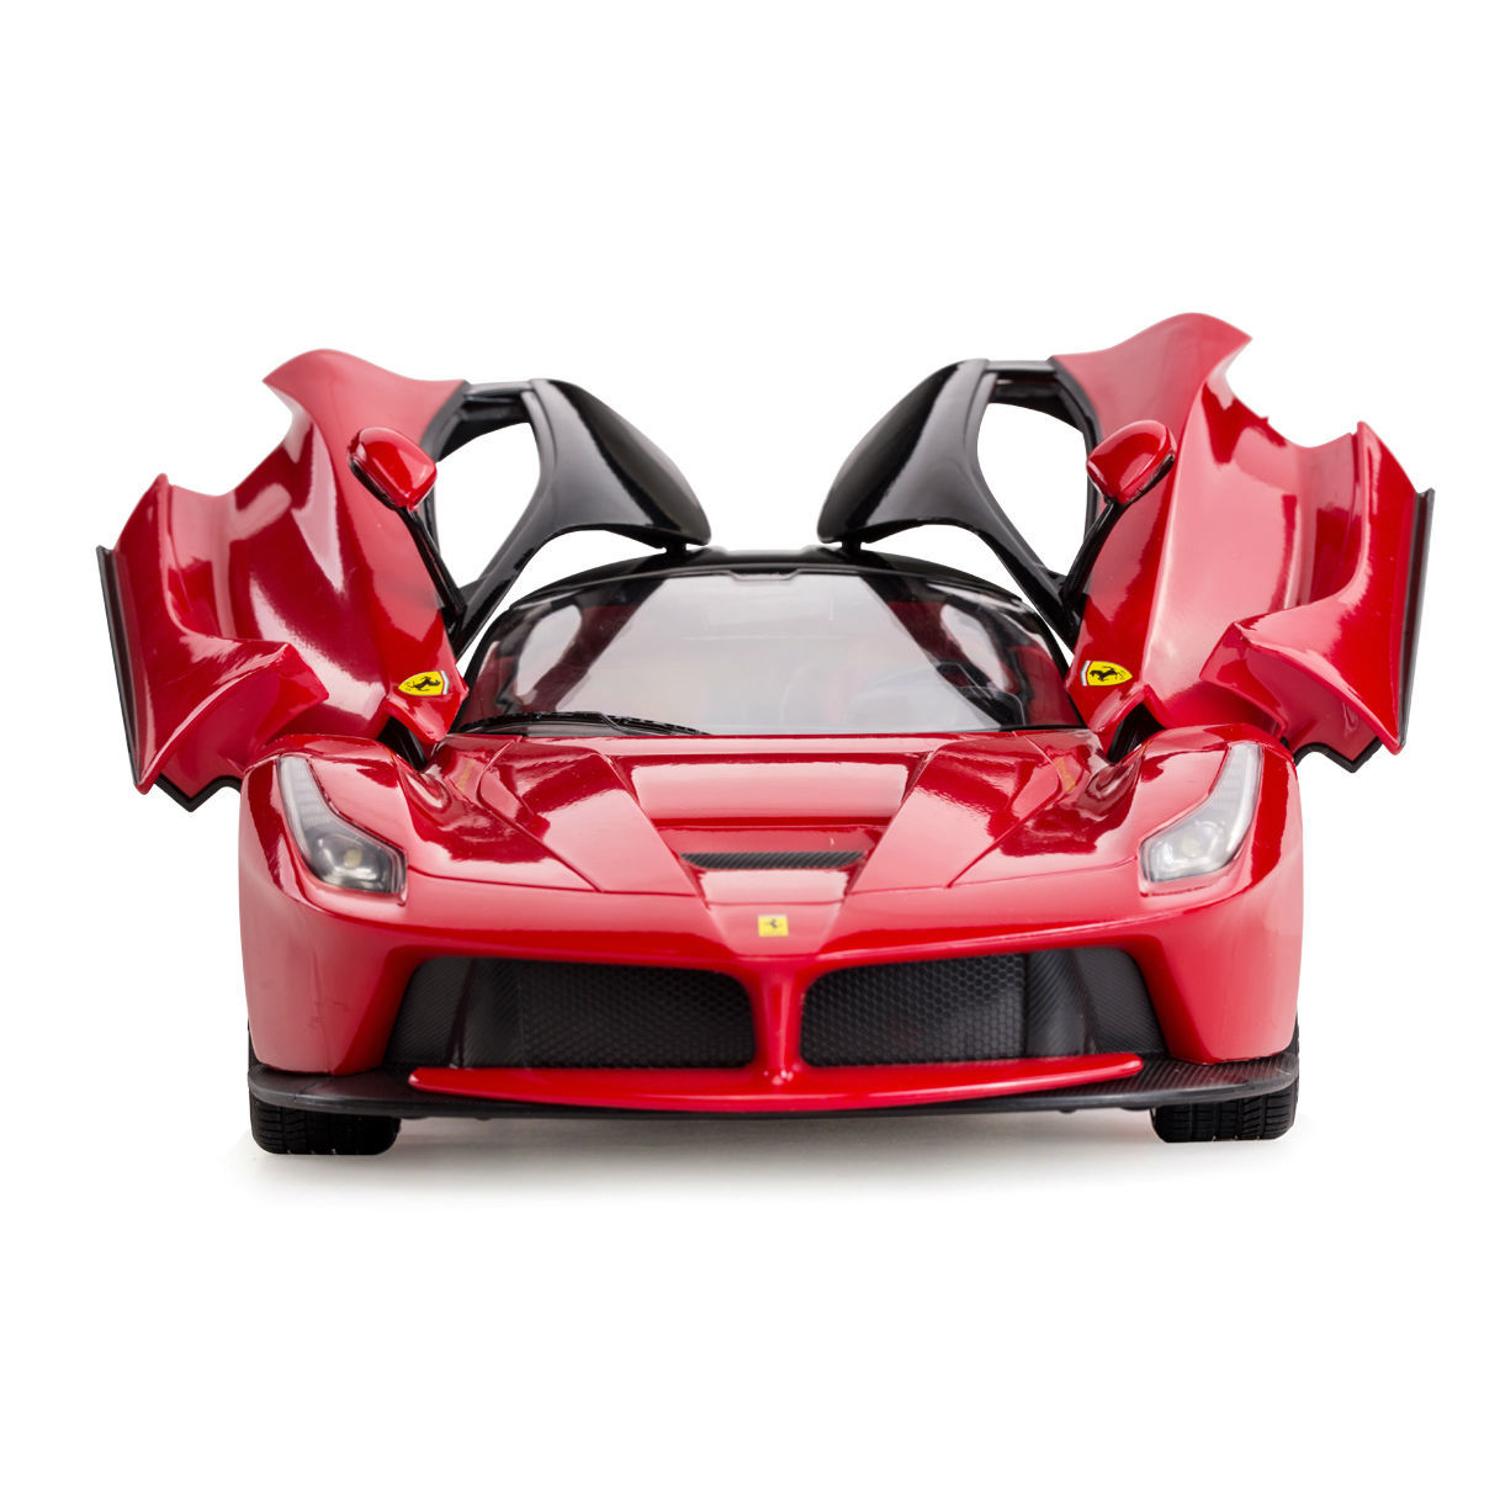 Машина на радиоуправлении Ferrari LaFerrari, со световыми эффектами, открываются двери, цвет красный, 1:14  